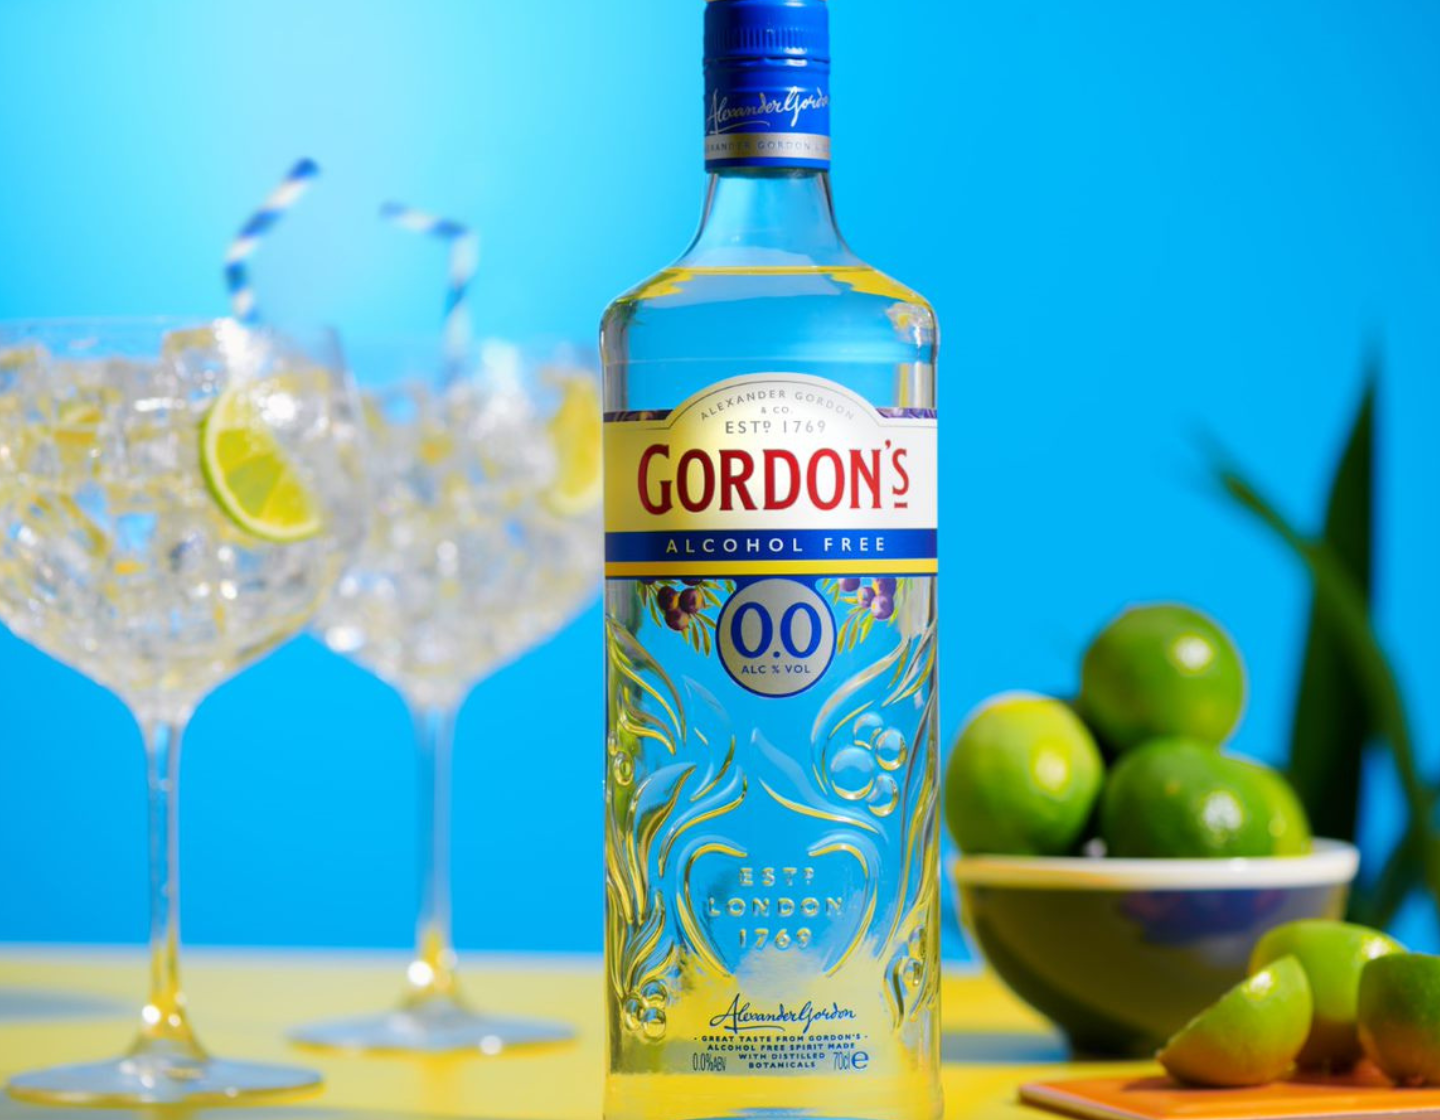 Bottle of Gordon’s 0.0% Alcohol Free beside two G&T glasses 